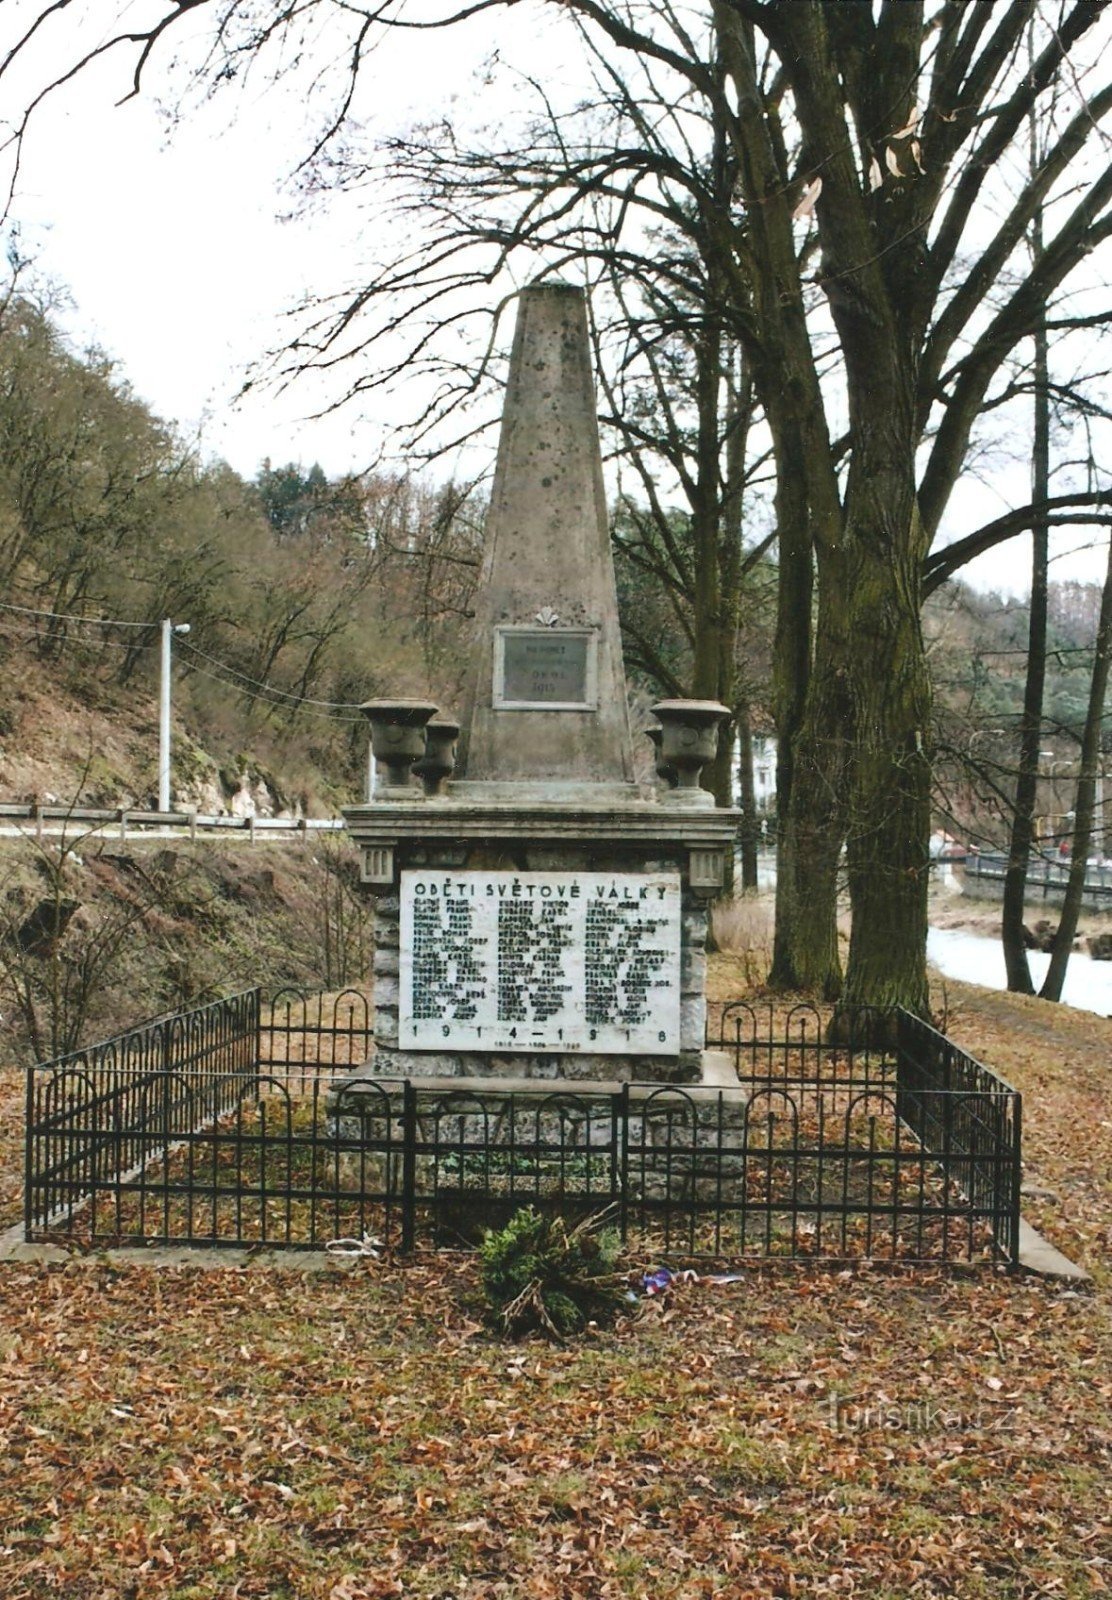 Đài tưởng niệm các nạn nhân của Chiến tranh thế giới thứ nhất